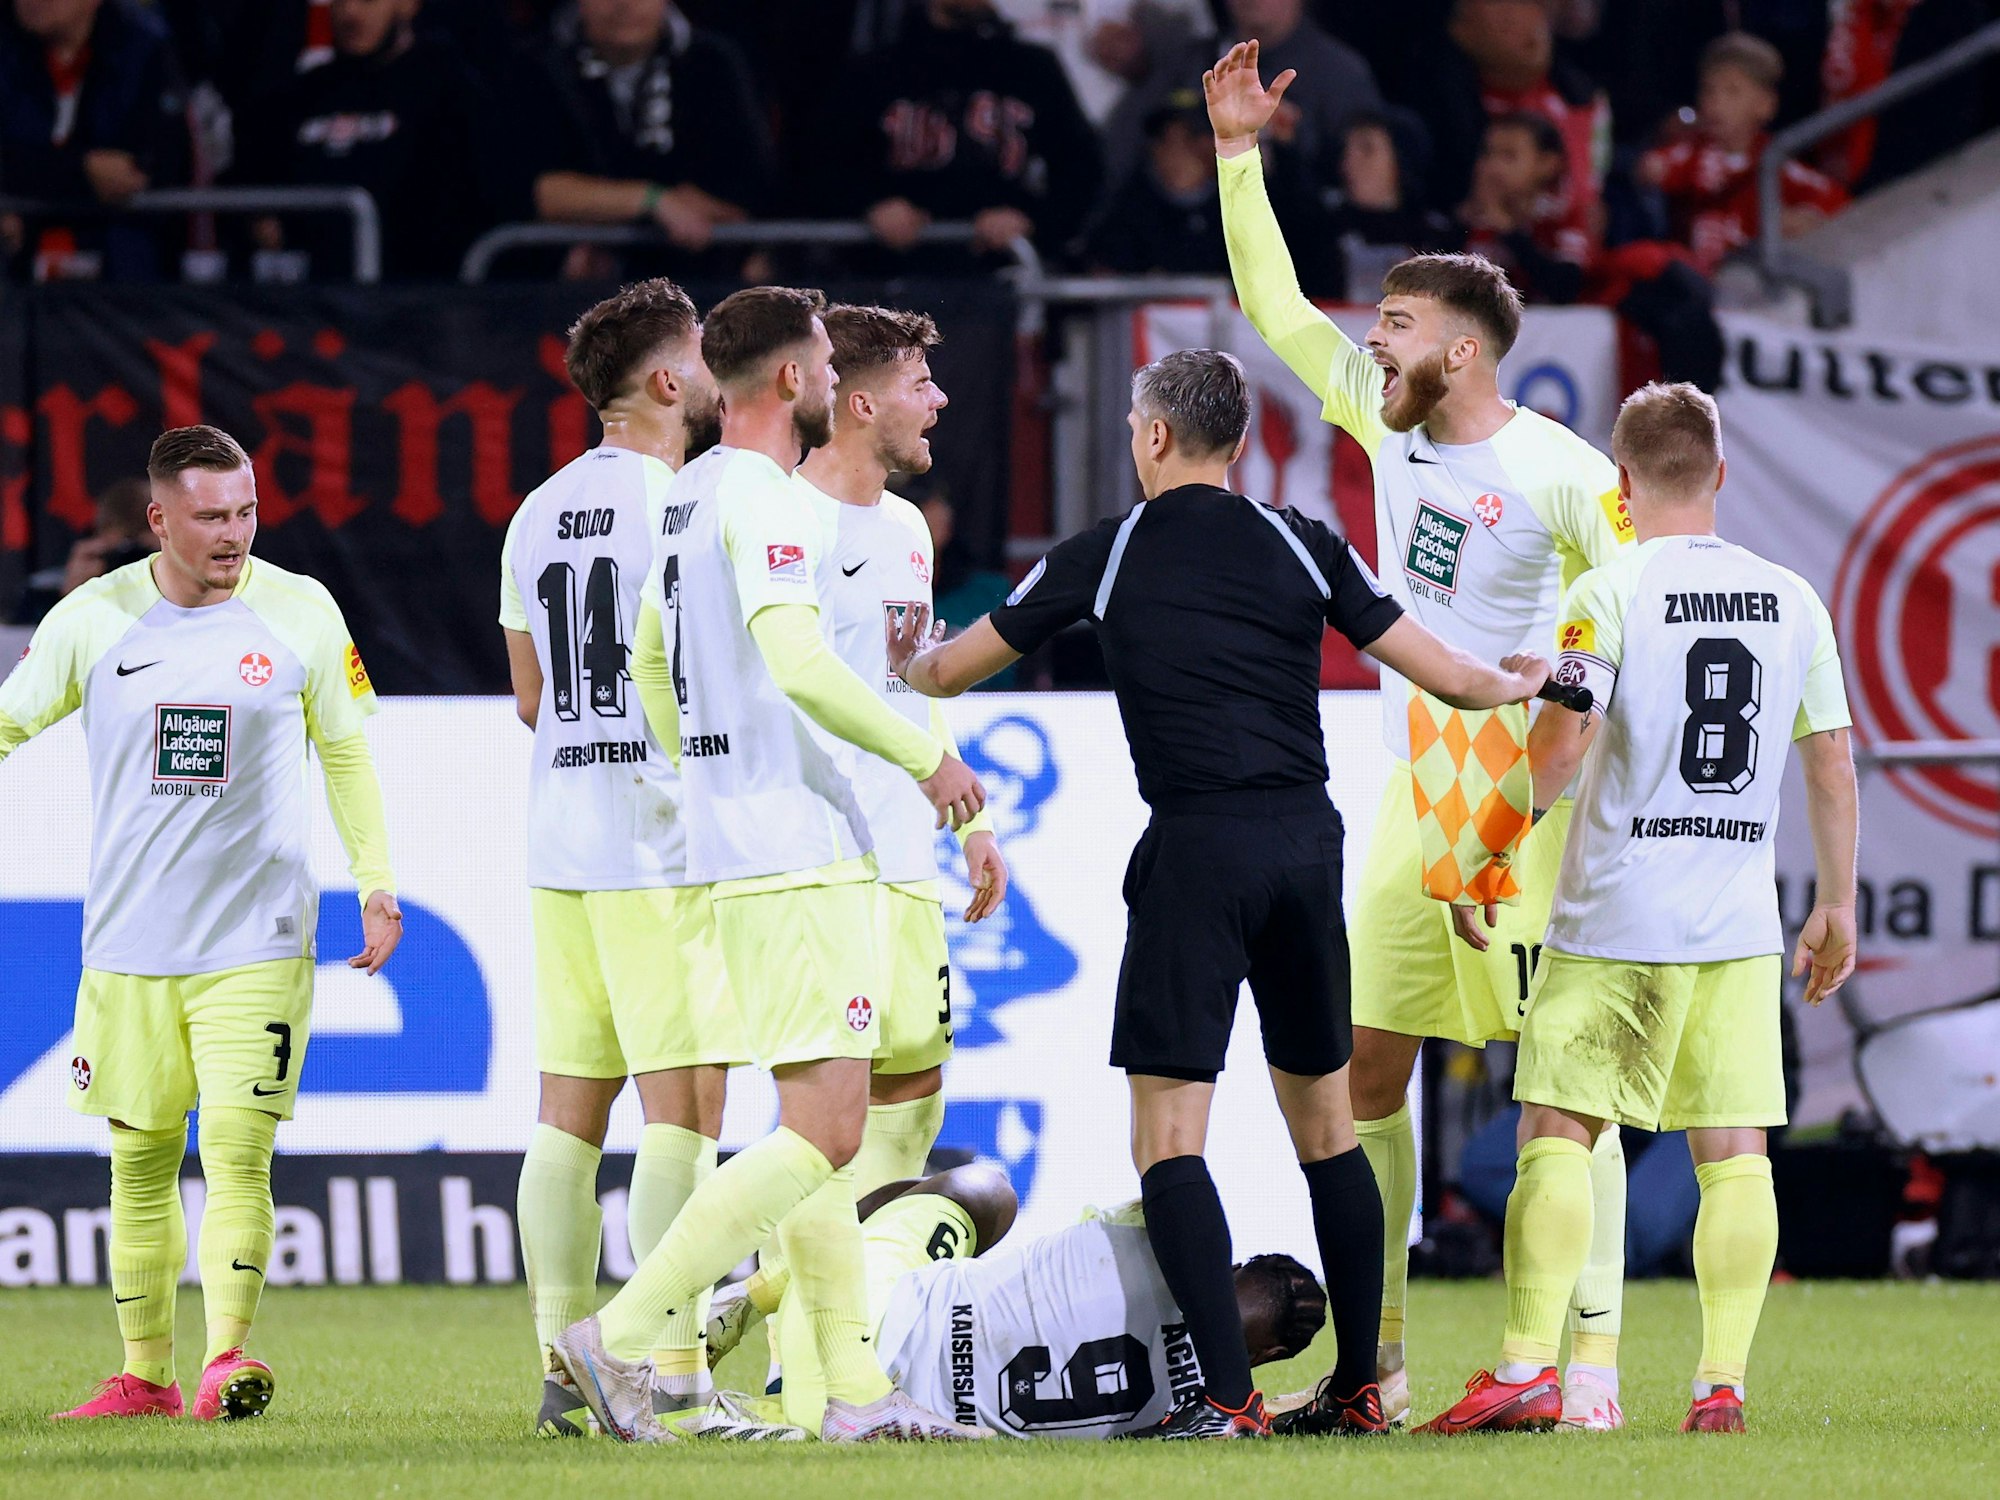 Stürmer Ragnar Ache vom 1. FC Kaiserslautern liegt beim Spiel in Düsseldorf am Boden, seine Teamkollegen und der Schiedsrichter bilden einen Kreis um ihn.